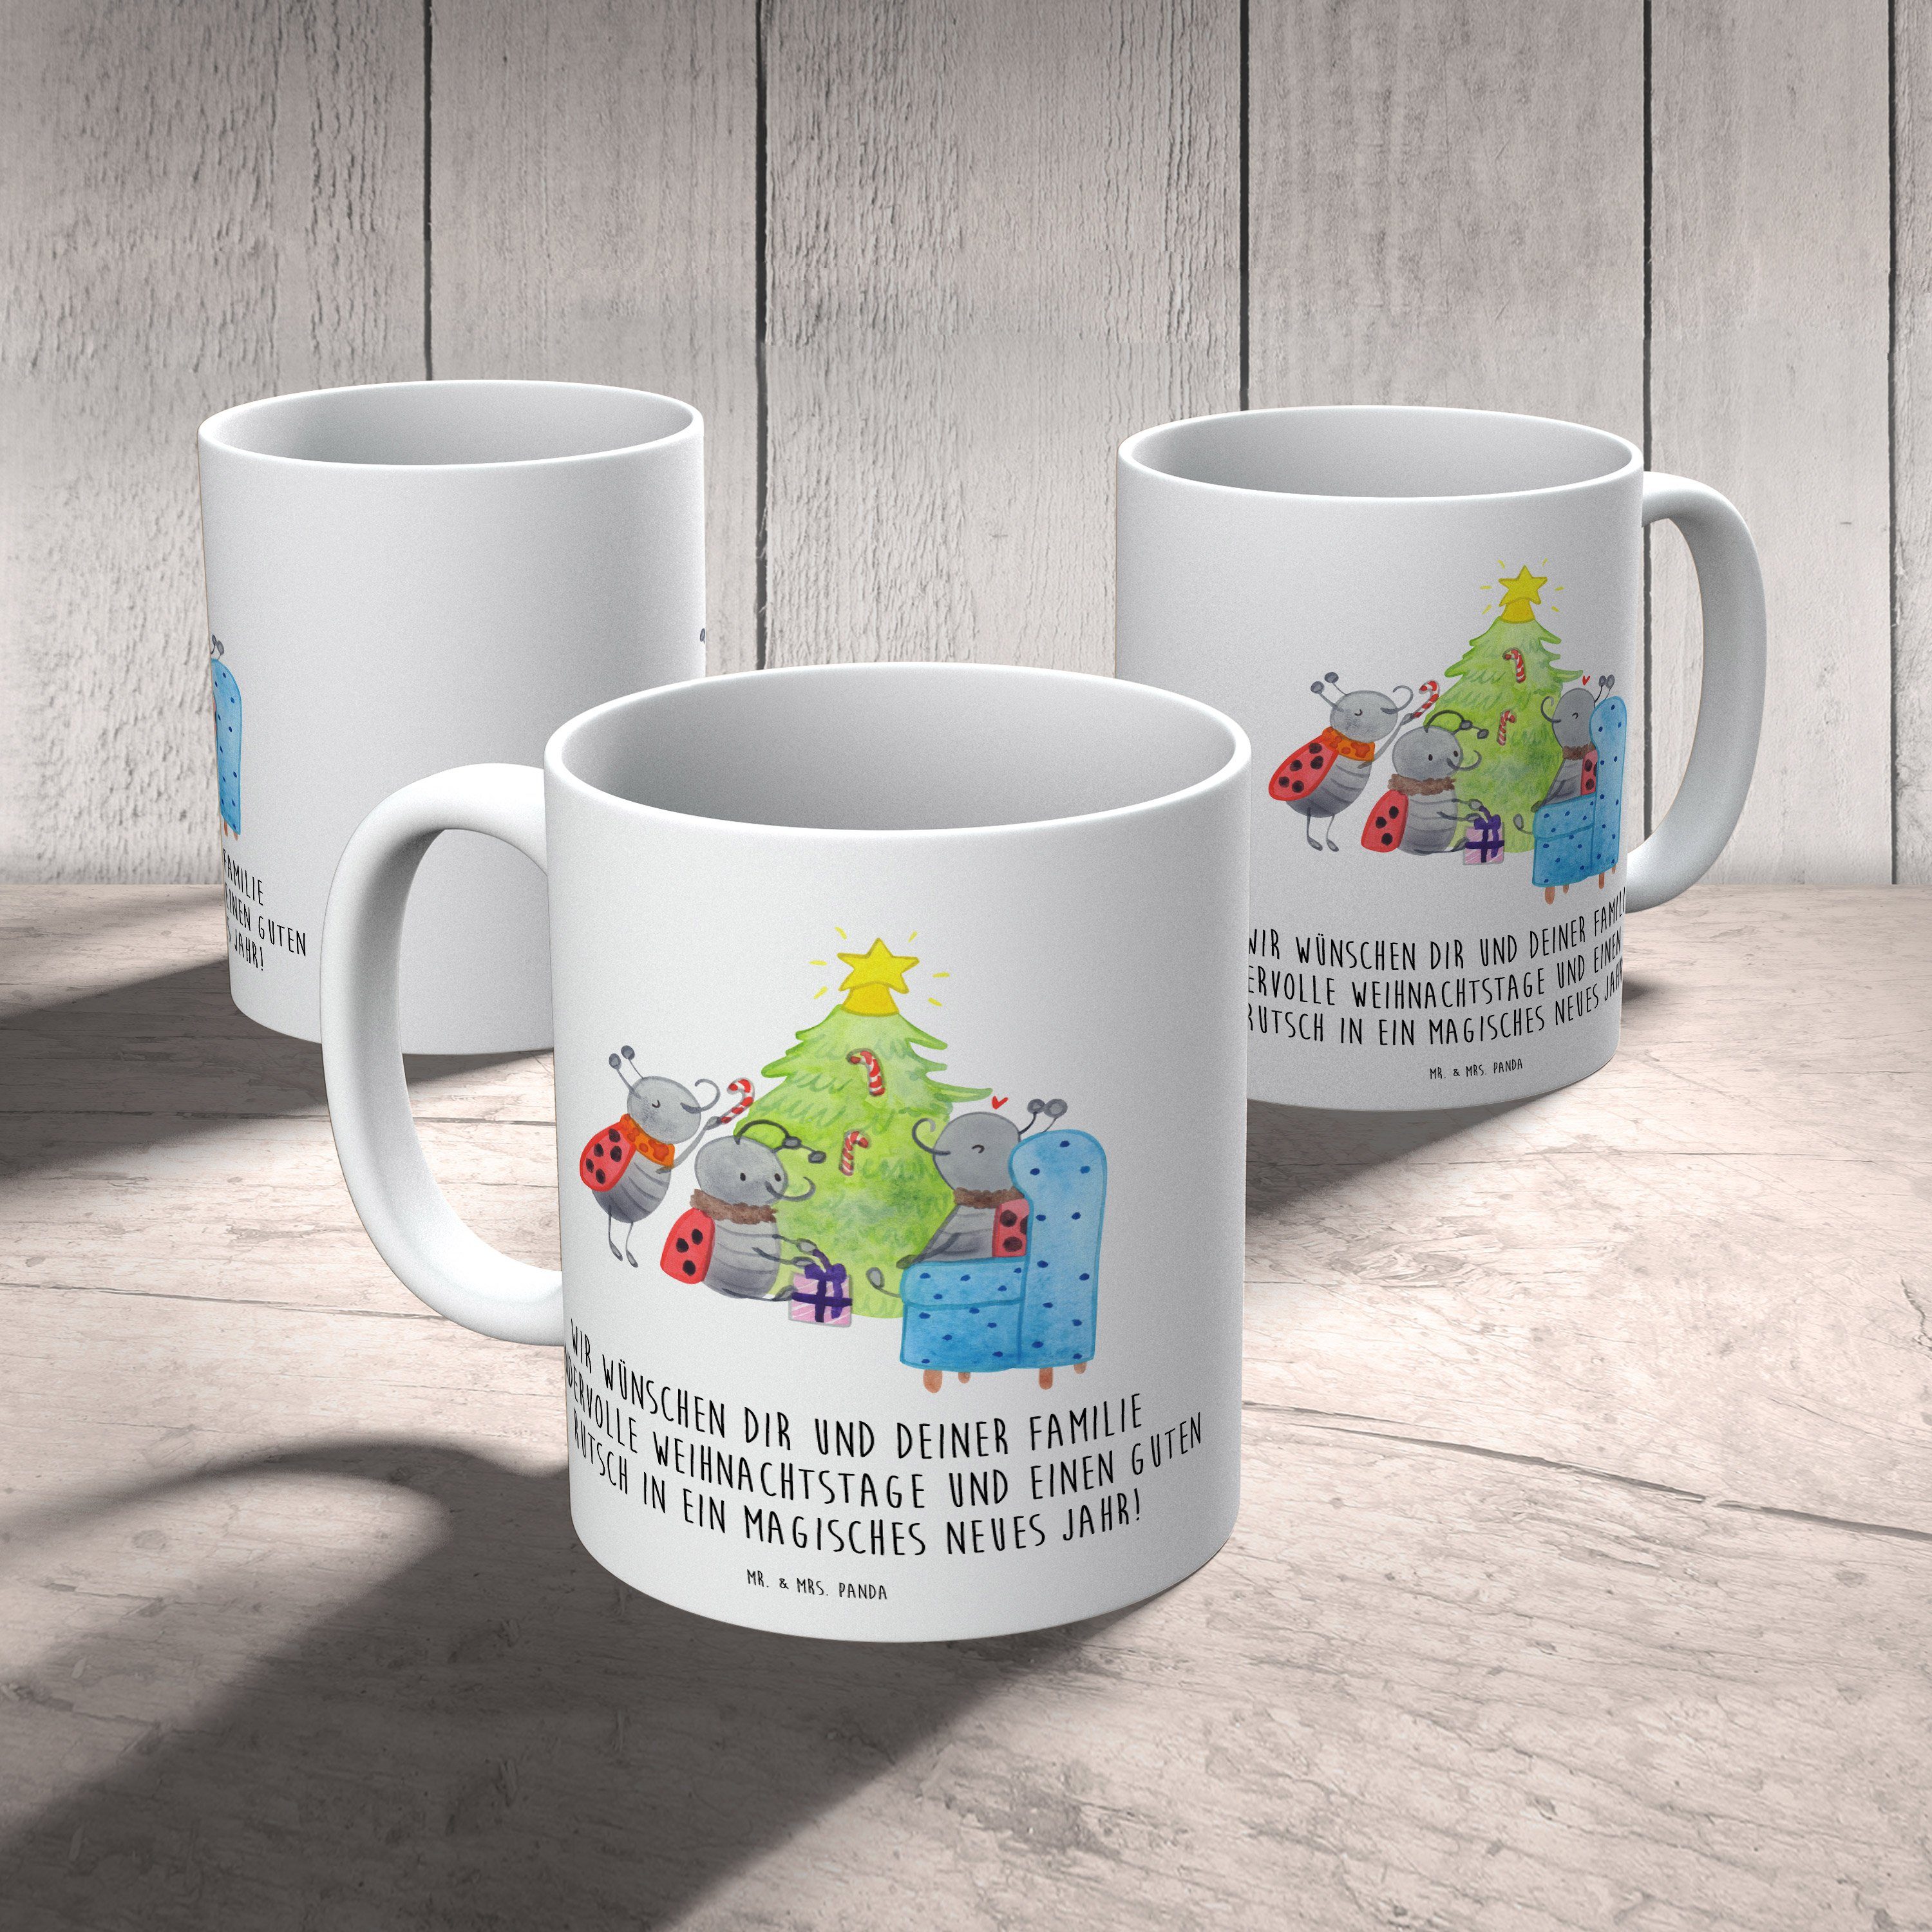 Kunststoff Smörle Weiß Geschenk, - - Panda Mrs. Kinderbecher Tasse, & Mr. Weihnachten Tannennadeln, Kunststoff